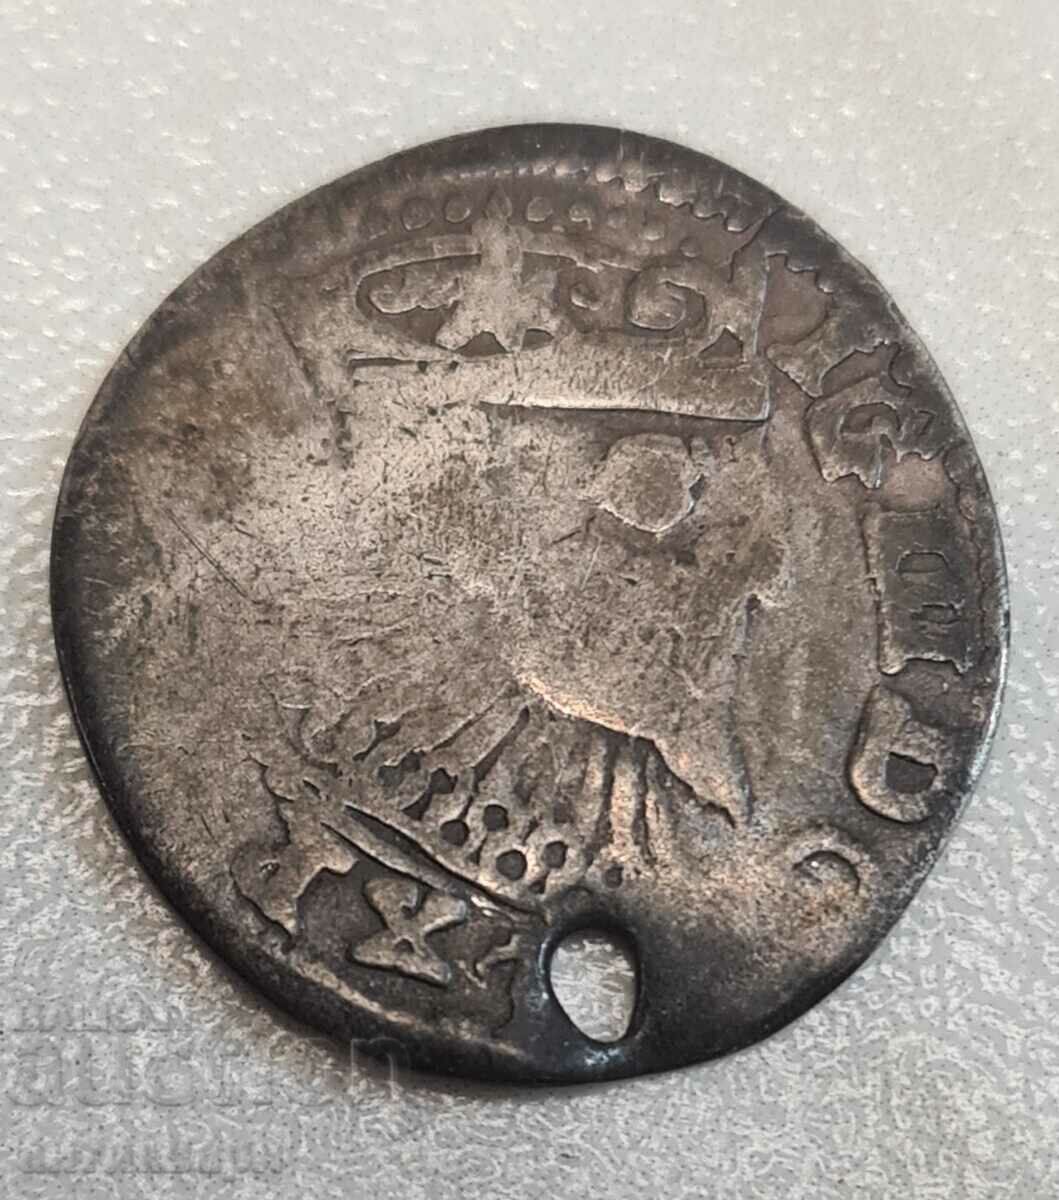 Sigismund silver coin